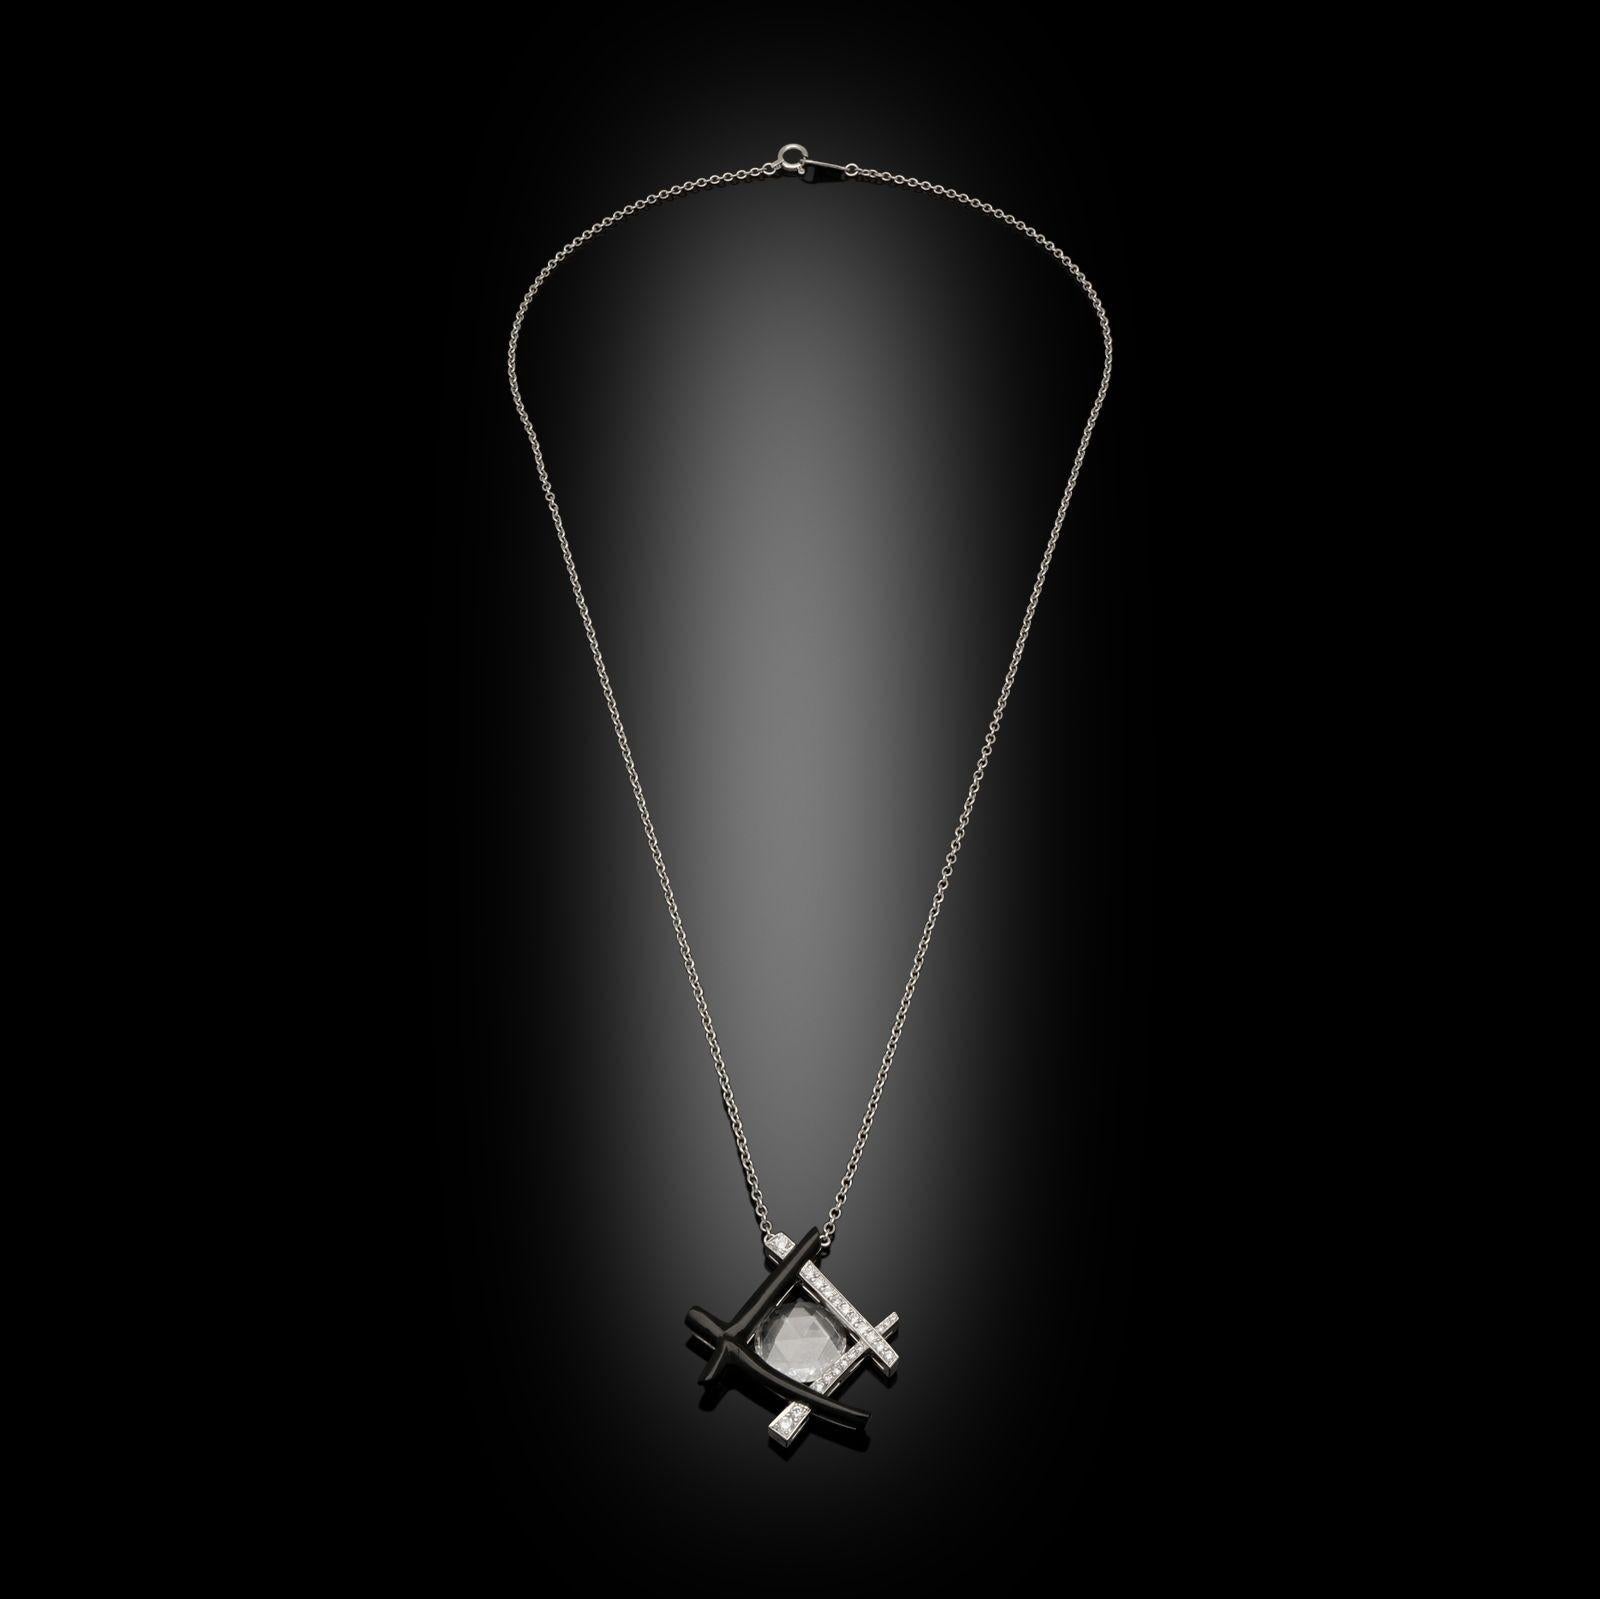 Ein ungewöhnlicher Diamantanhänger mit Rosenschliff von Hancocks, in der Mitte besetzt mit einem schönen, hochwertigen Diamanten im Rosenschliff mit einem Gewicht von 1,12 ct. und einer Farbe von D und einer Reinheit von VVS2 in einem abstrakten